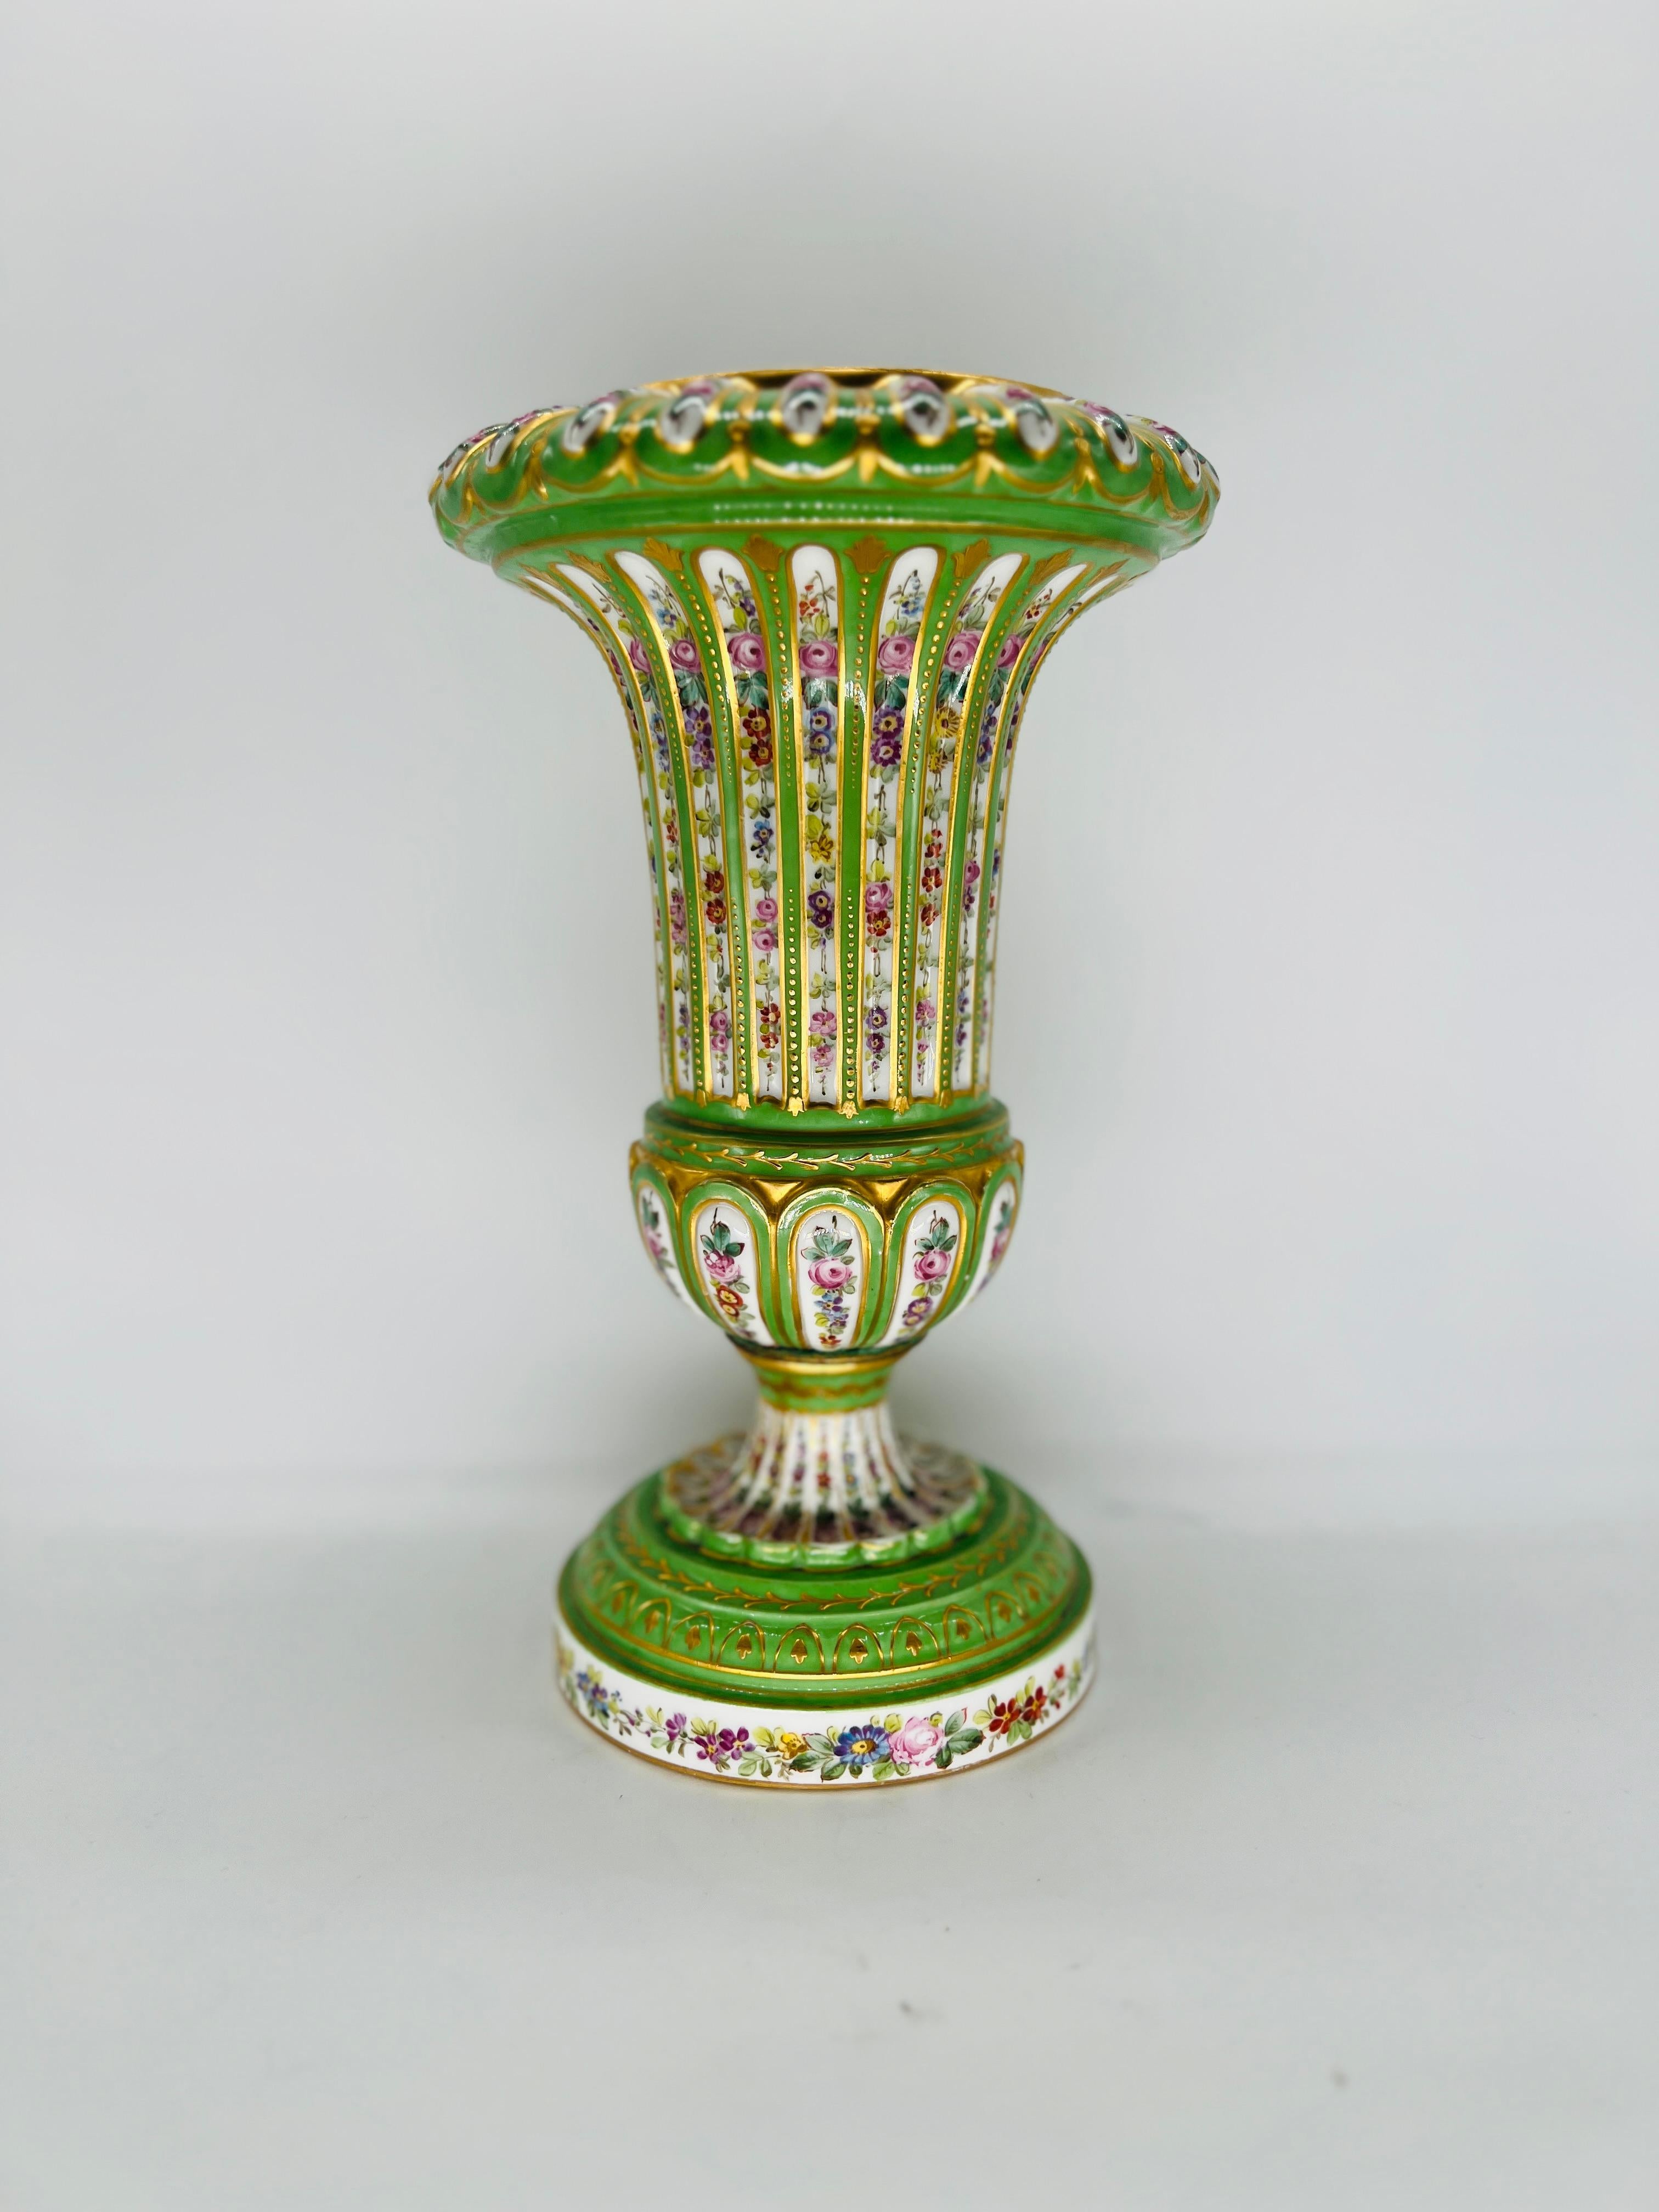 Antique French Sevres Porcelain Floral Enamel Decorated Vase C. 1770 For Sale 5